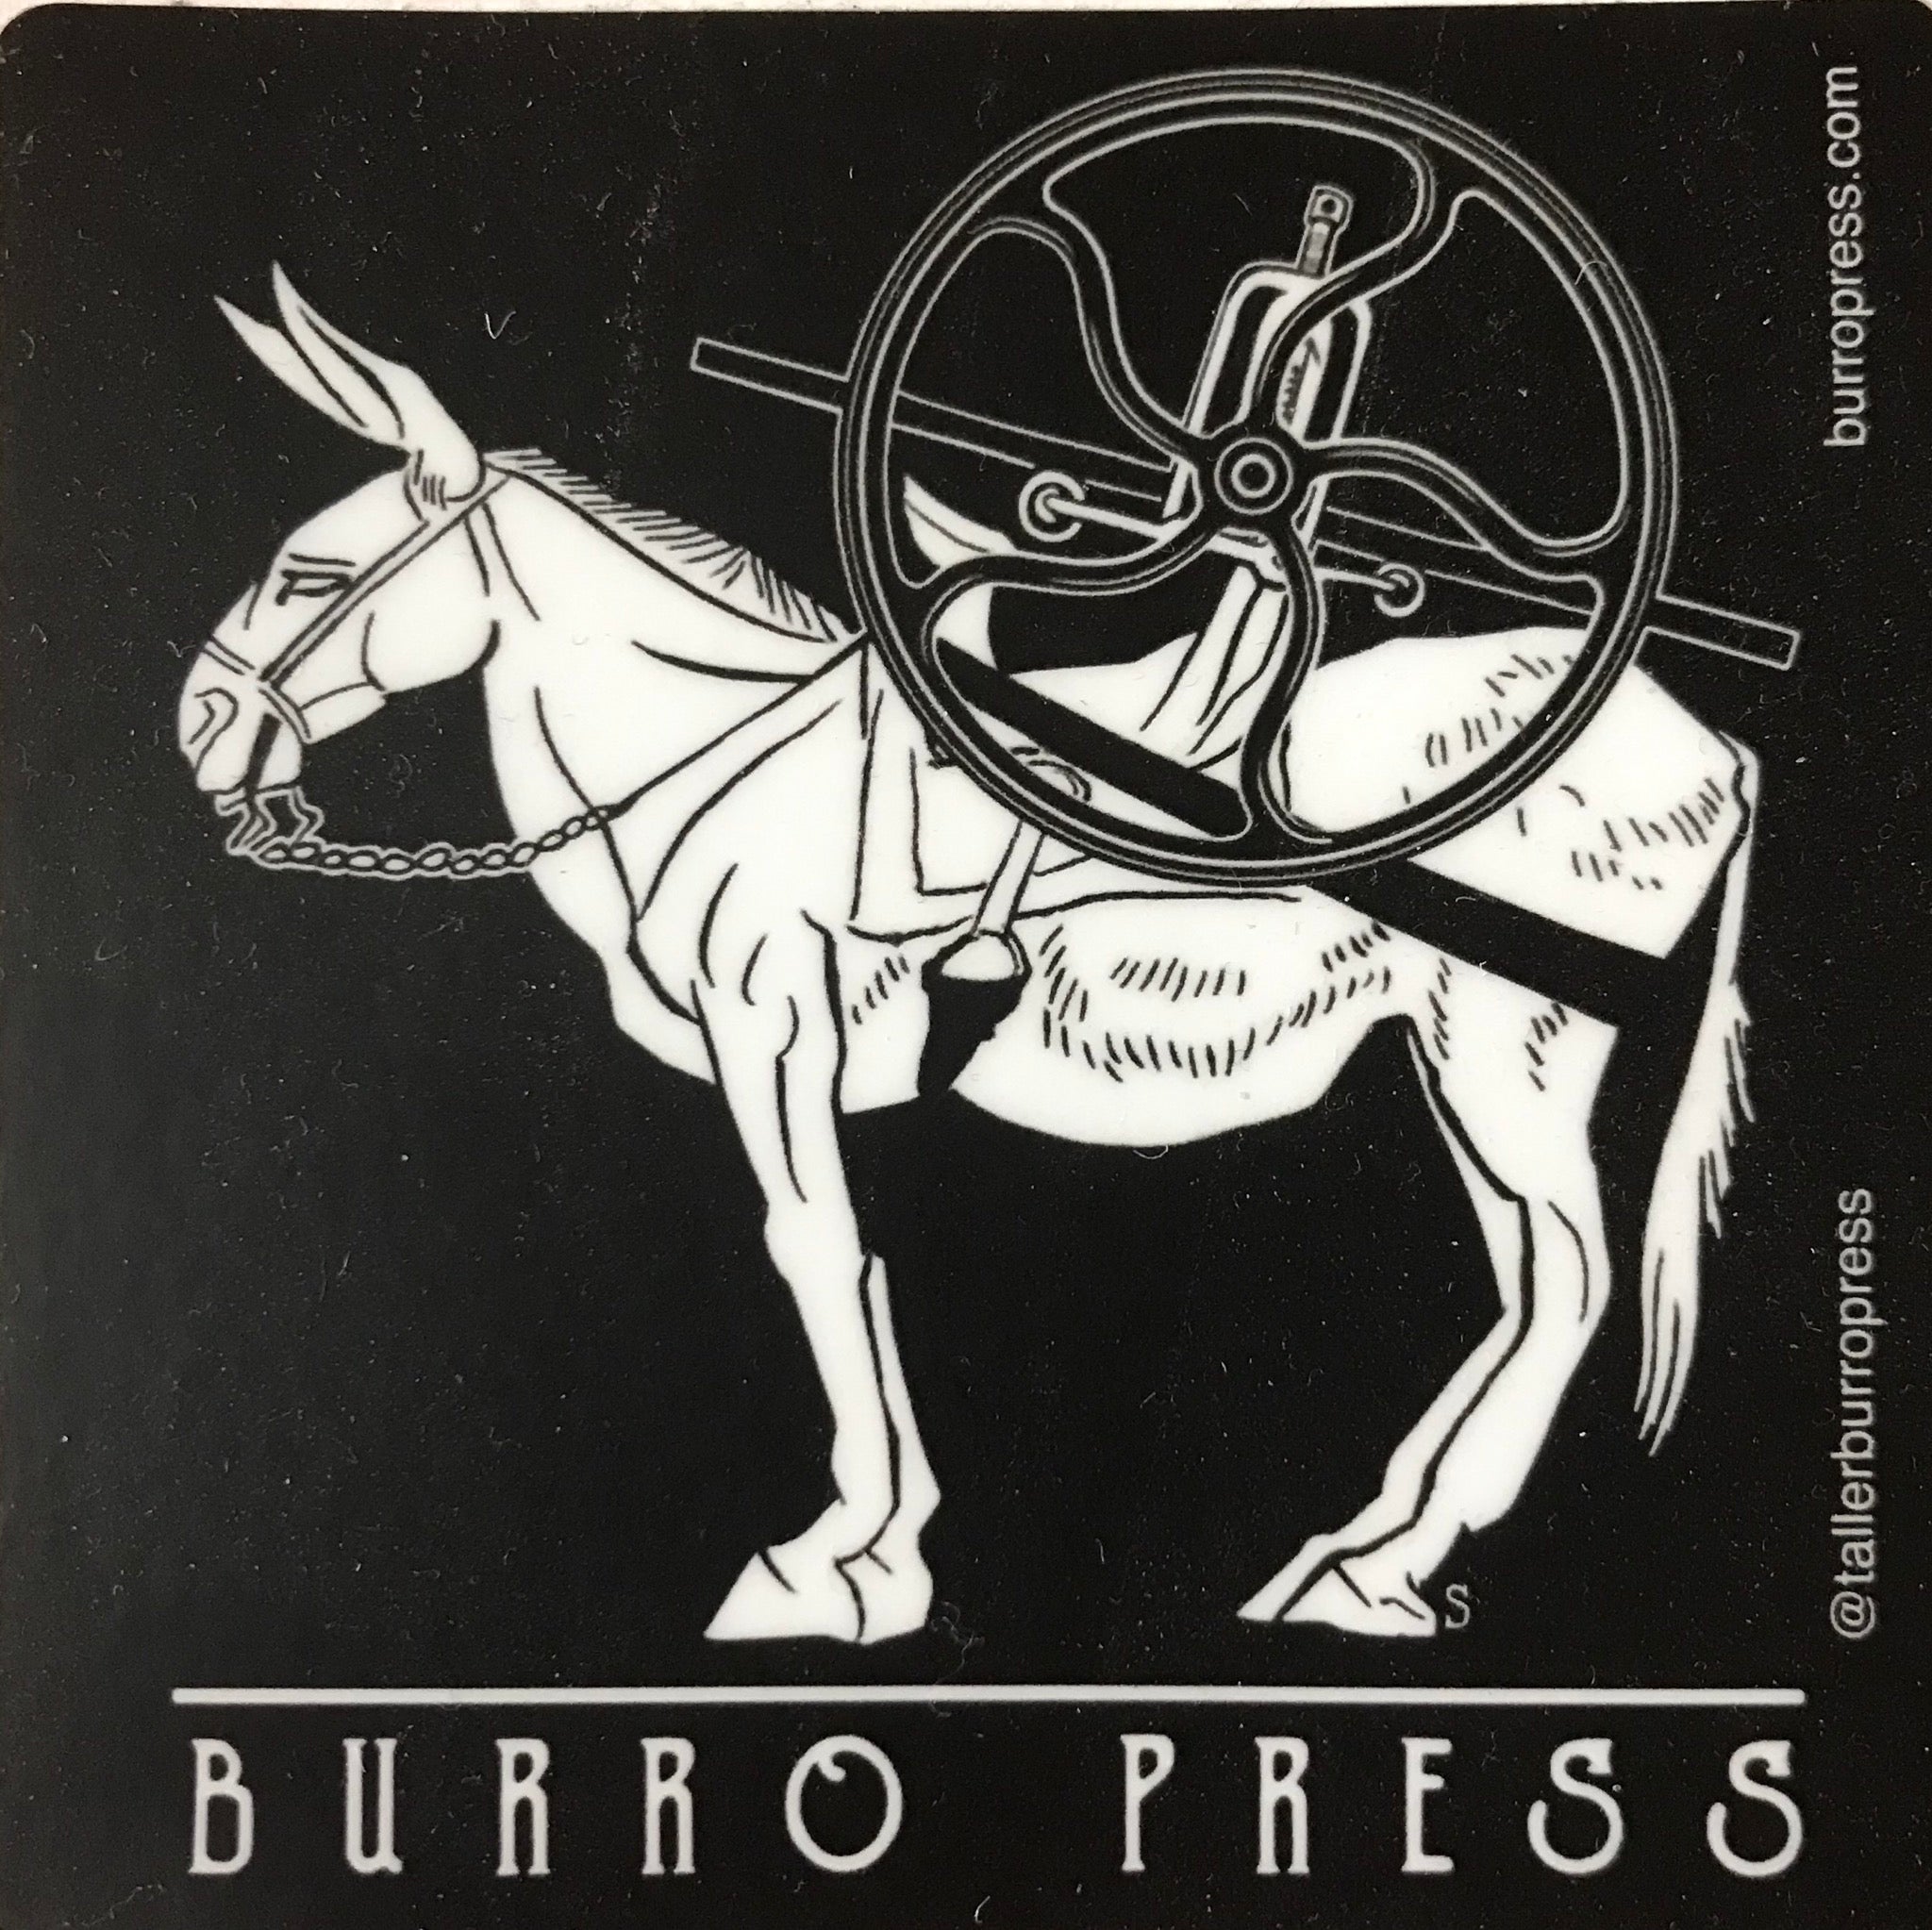 Burro Press